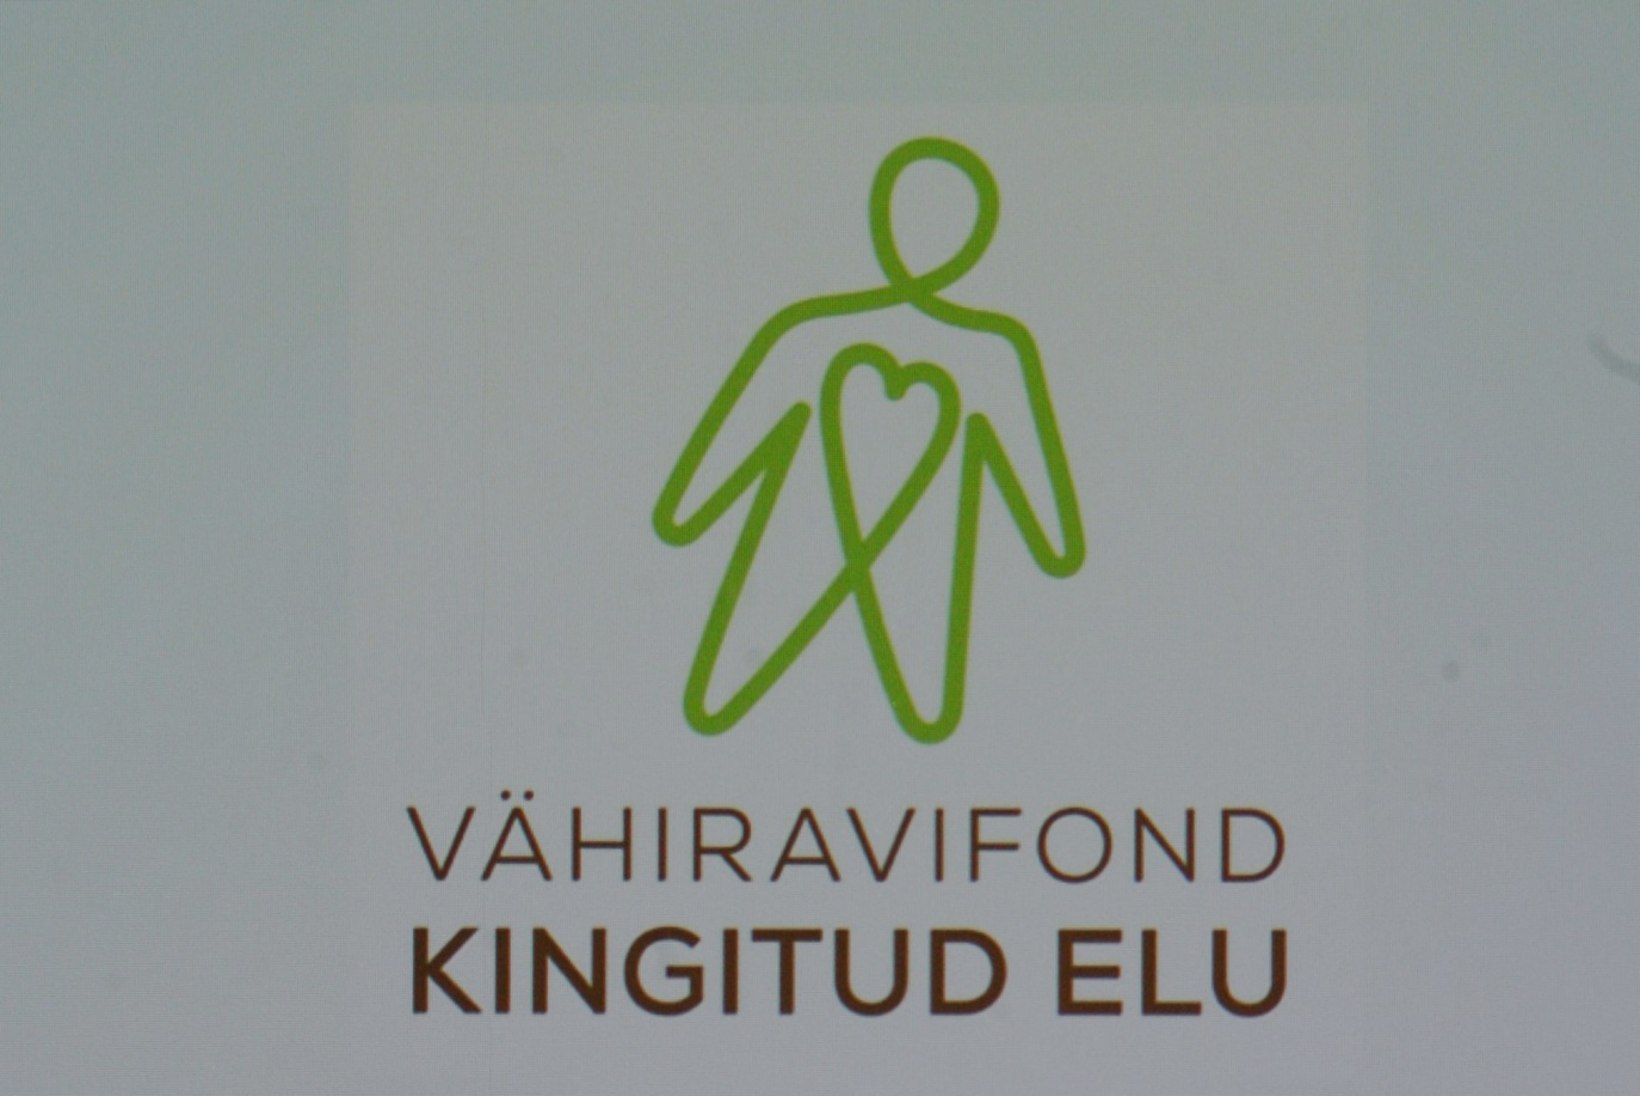 Vähiravifondi "Kingitud elu" talgutel annetati nädalaga üle 44 000 euro